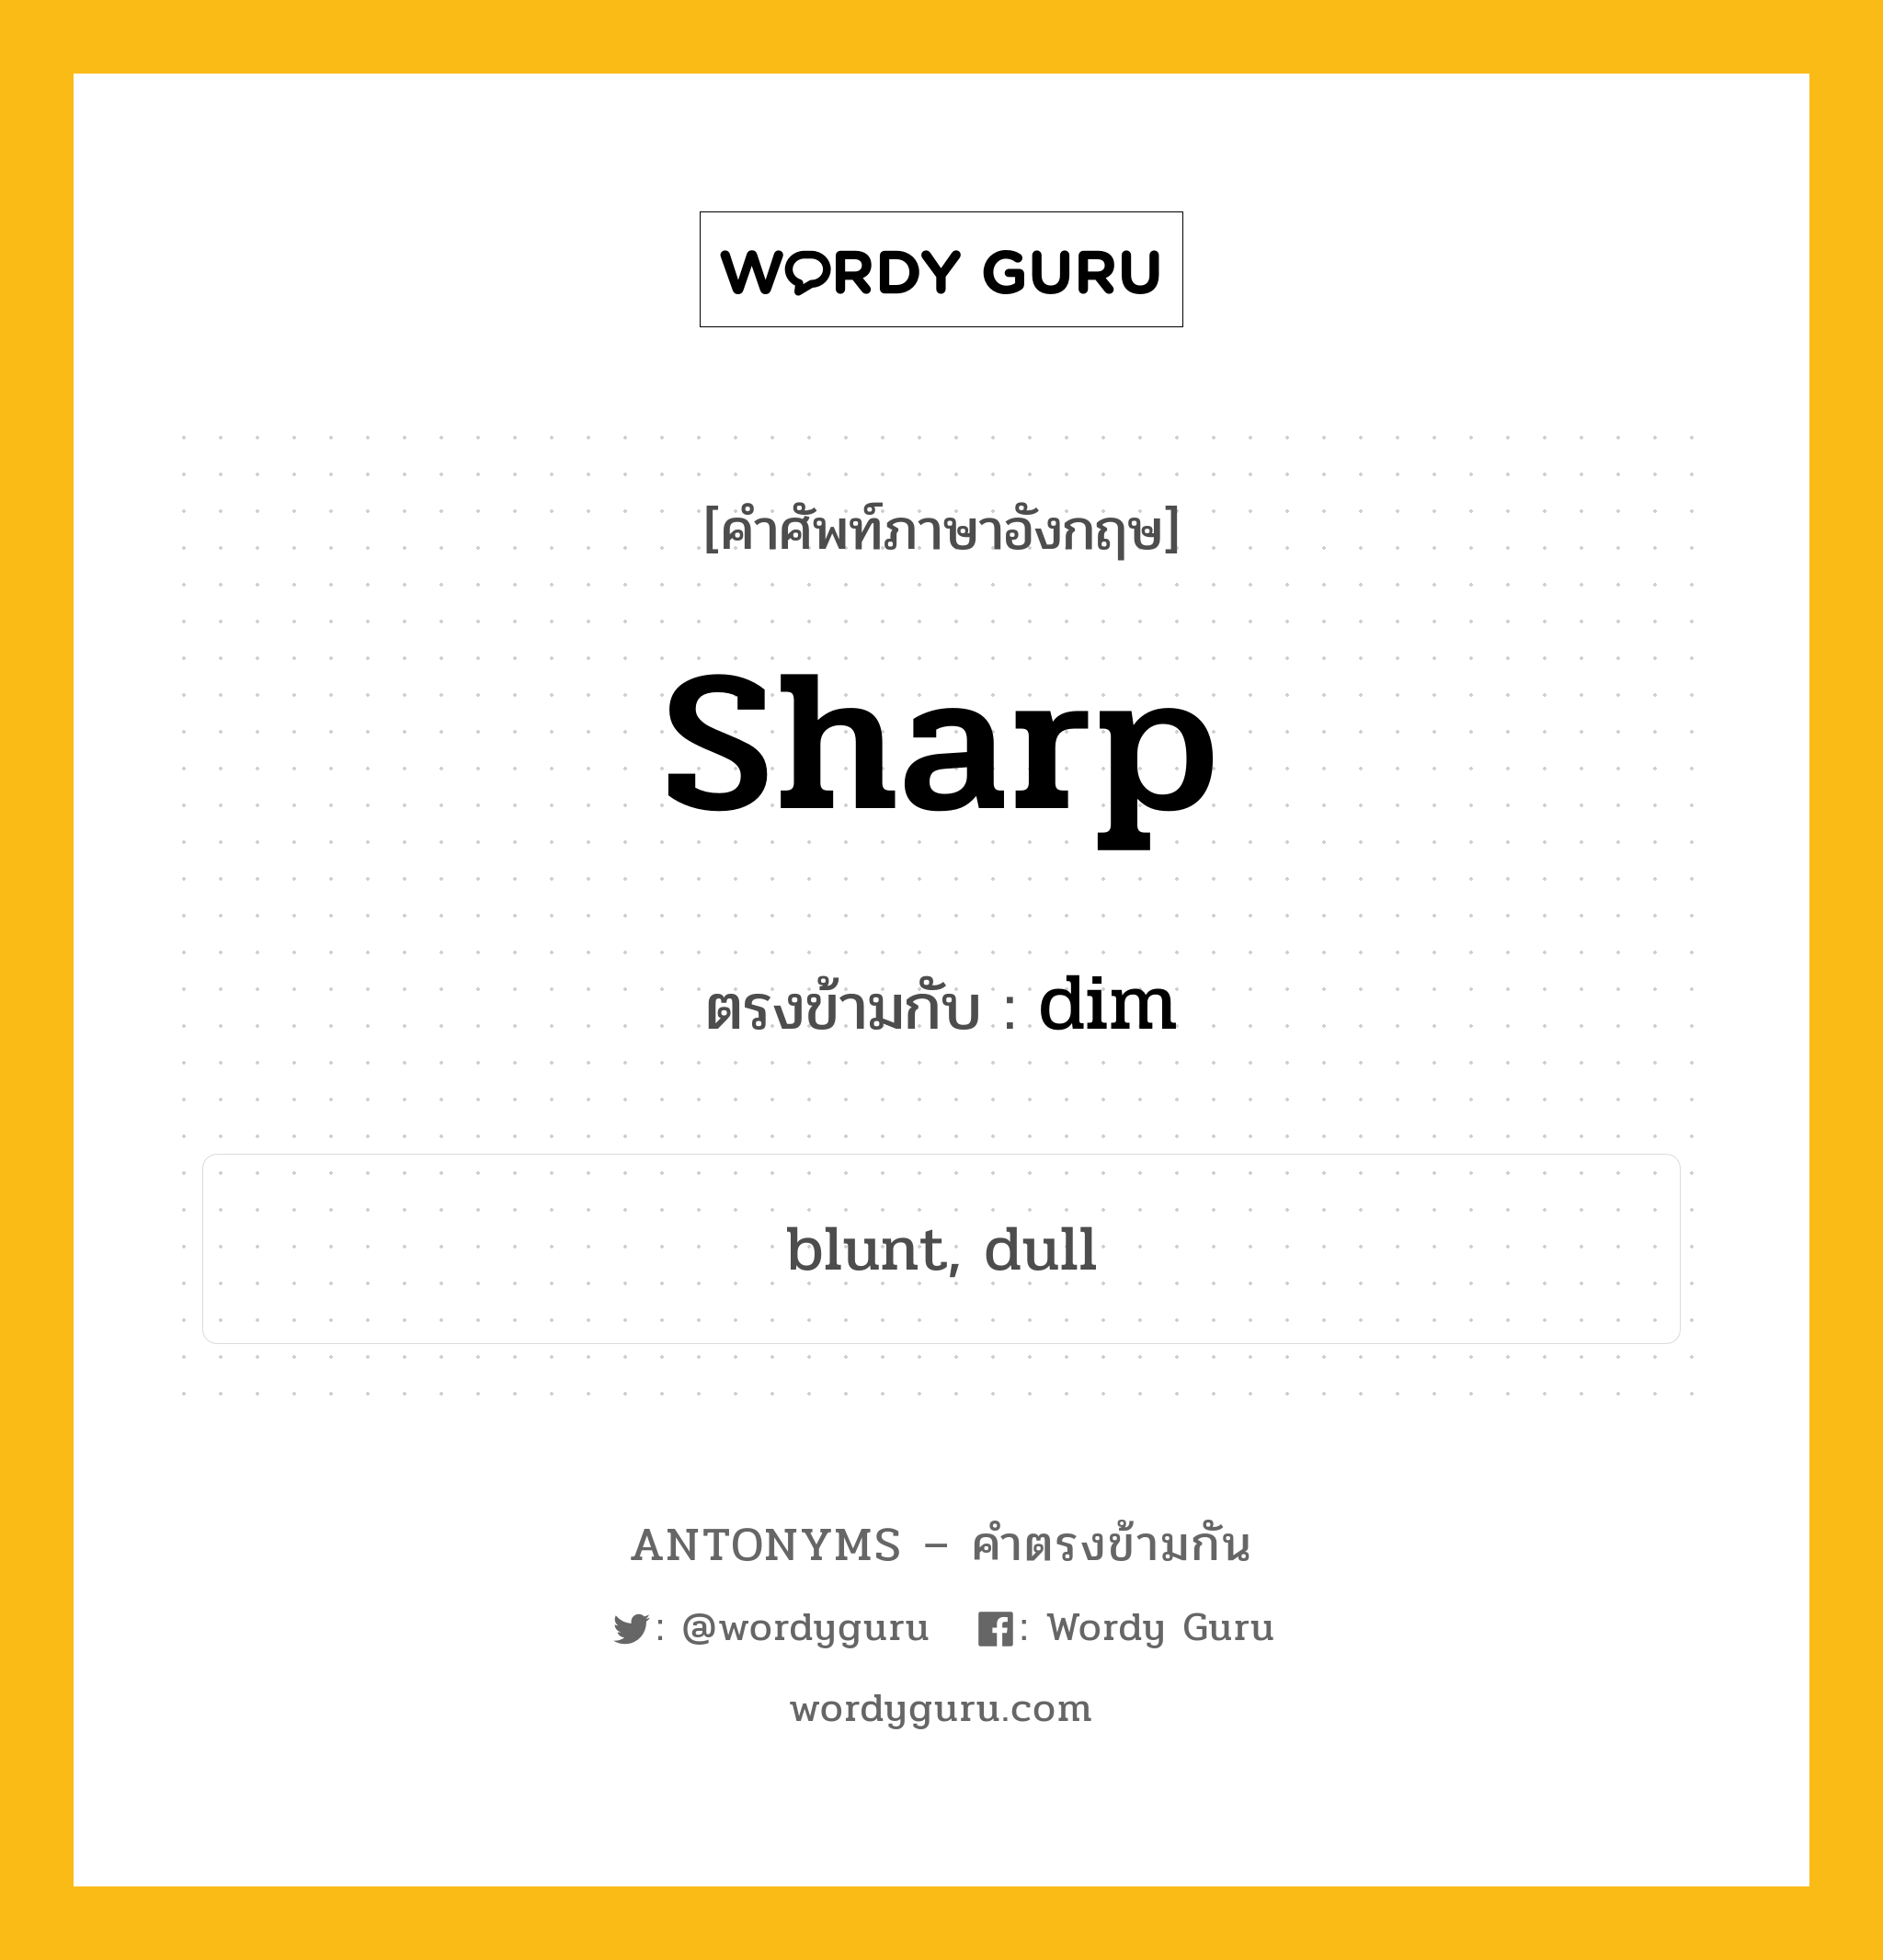 sharp เป็นคำตรงข้ามกับคำไหนบ้าง?, คำศัพท์ภาษาอังกฤษ sharp ตรงข้ามกับ dim หมวด dim